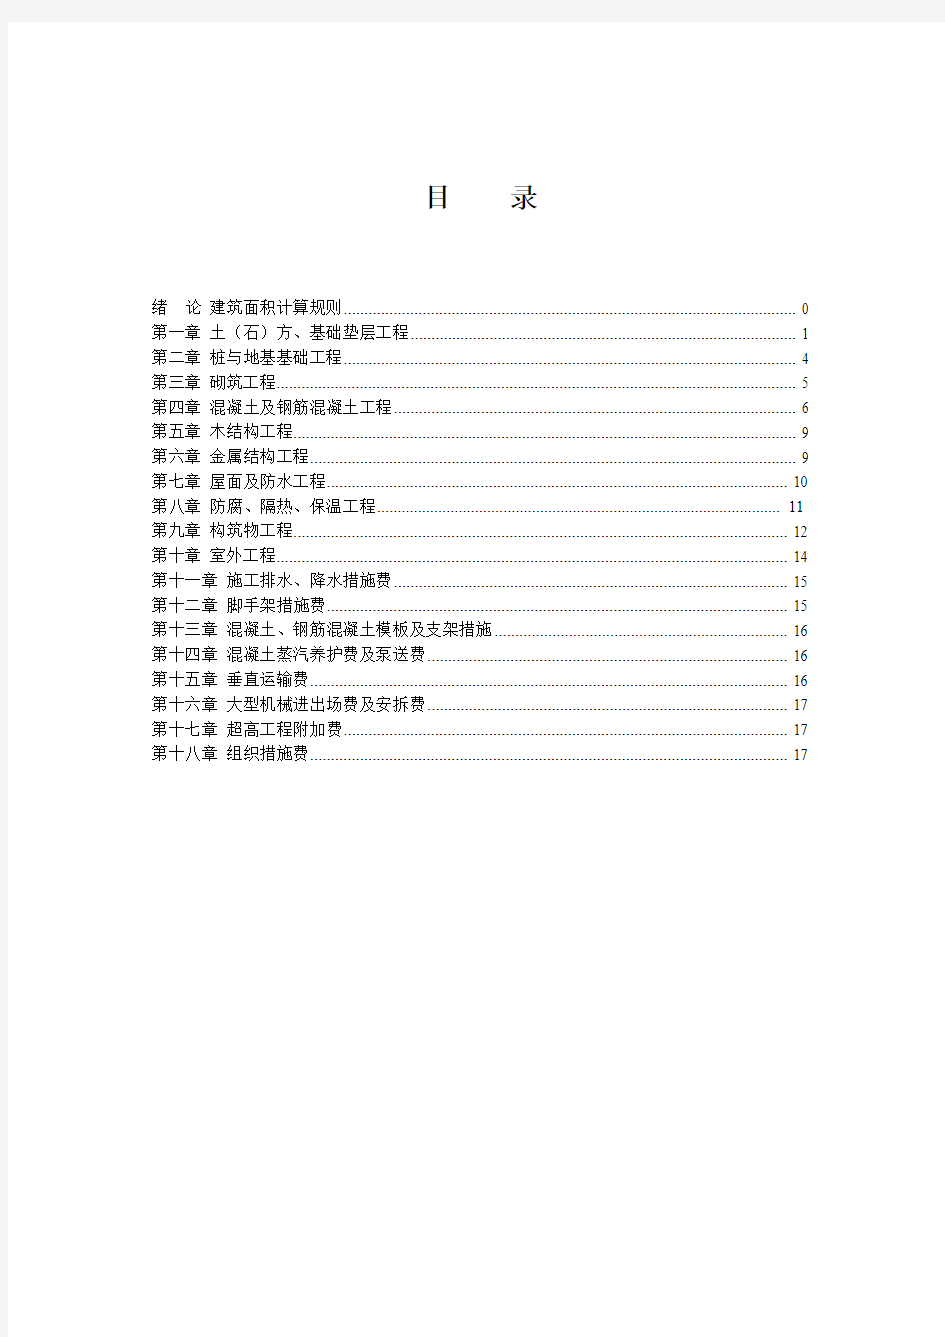 2012天津市建筑工程预算基价工程量计算规则